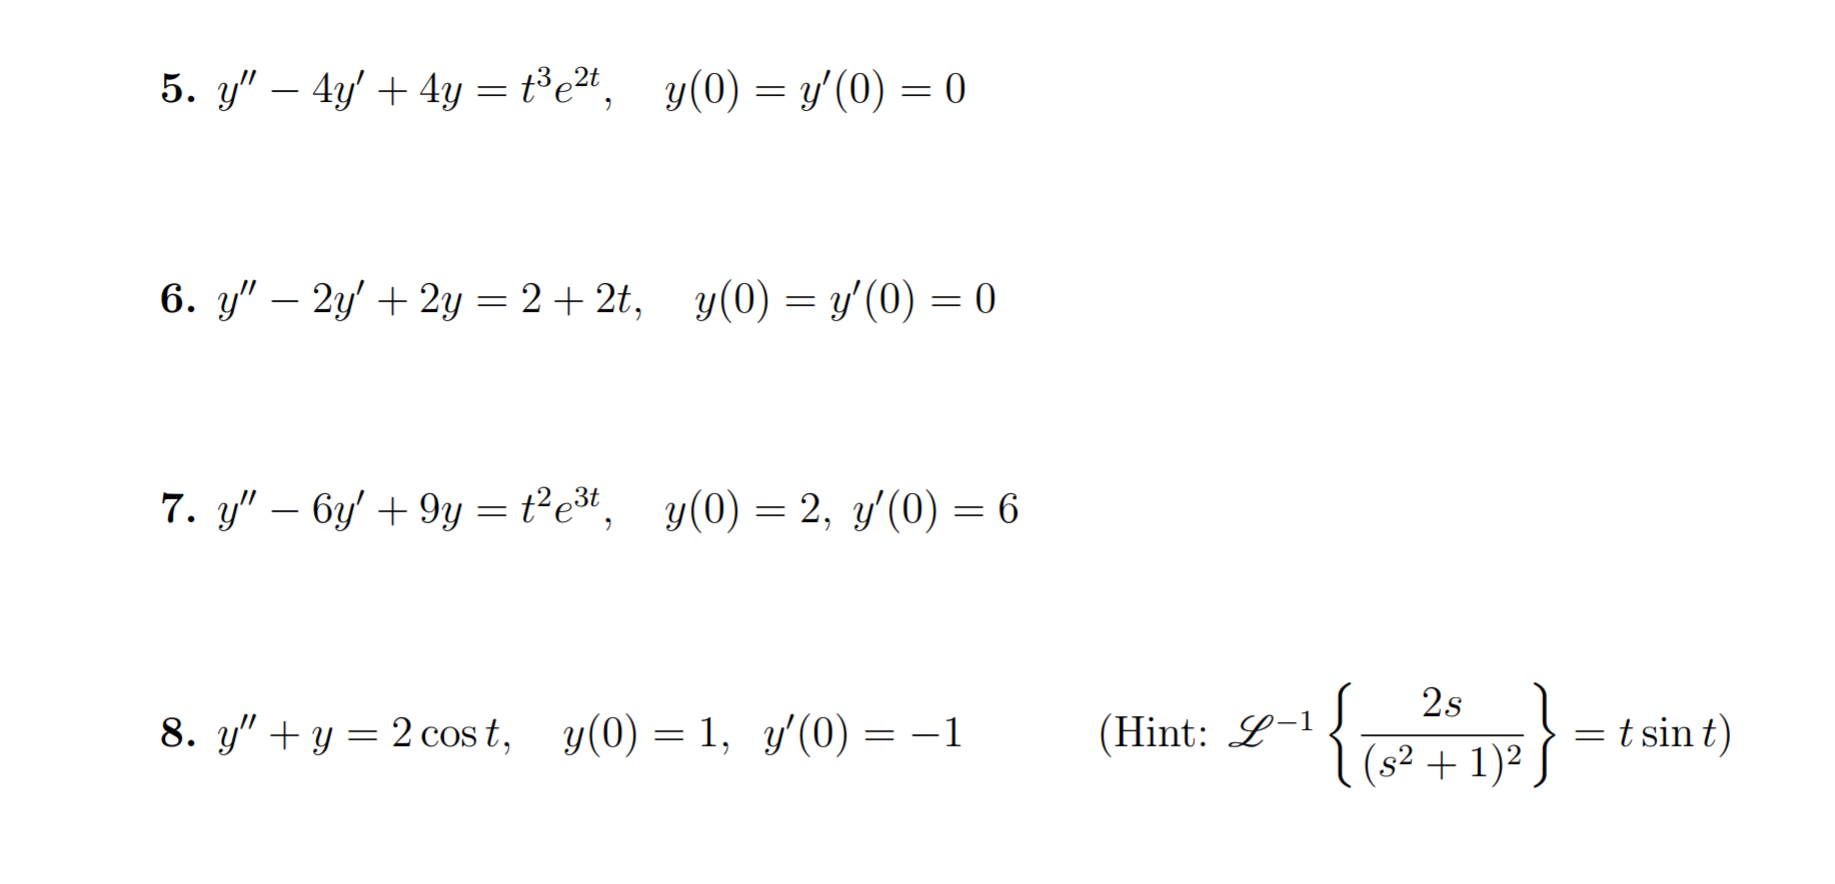 6. У',-2/ + 2y = 2 + 2t,
y(0) = y'(0) = 0
8. y" + y = 2cos t,
(Hint:y-i-22s1122
coS t,y
y(0)=1,
y(0) =-1
tsint)
